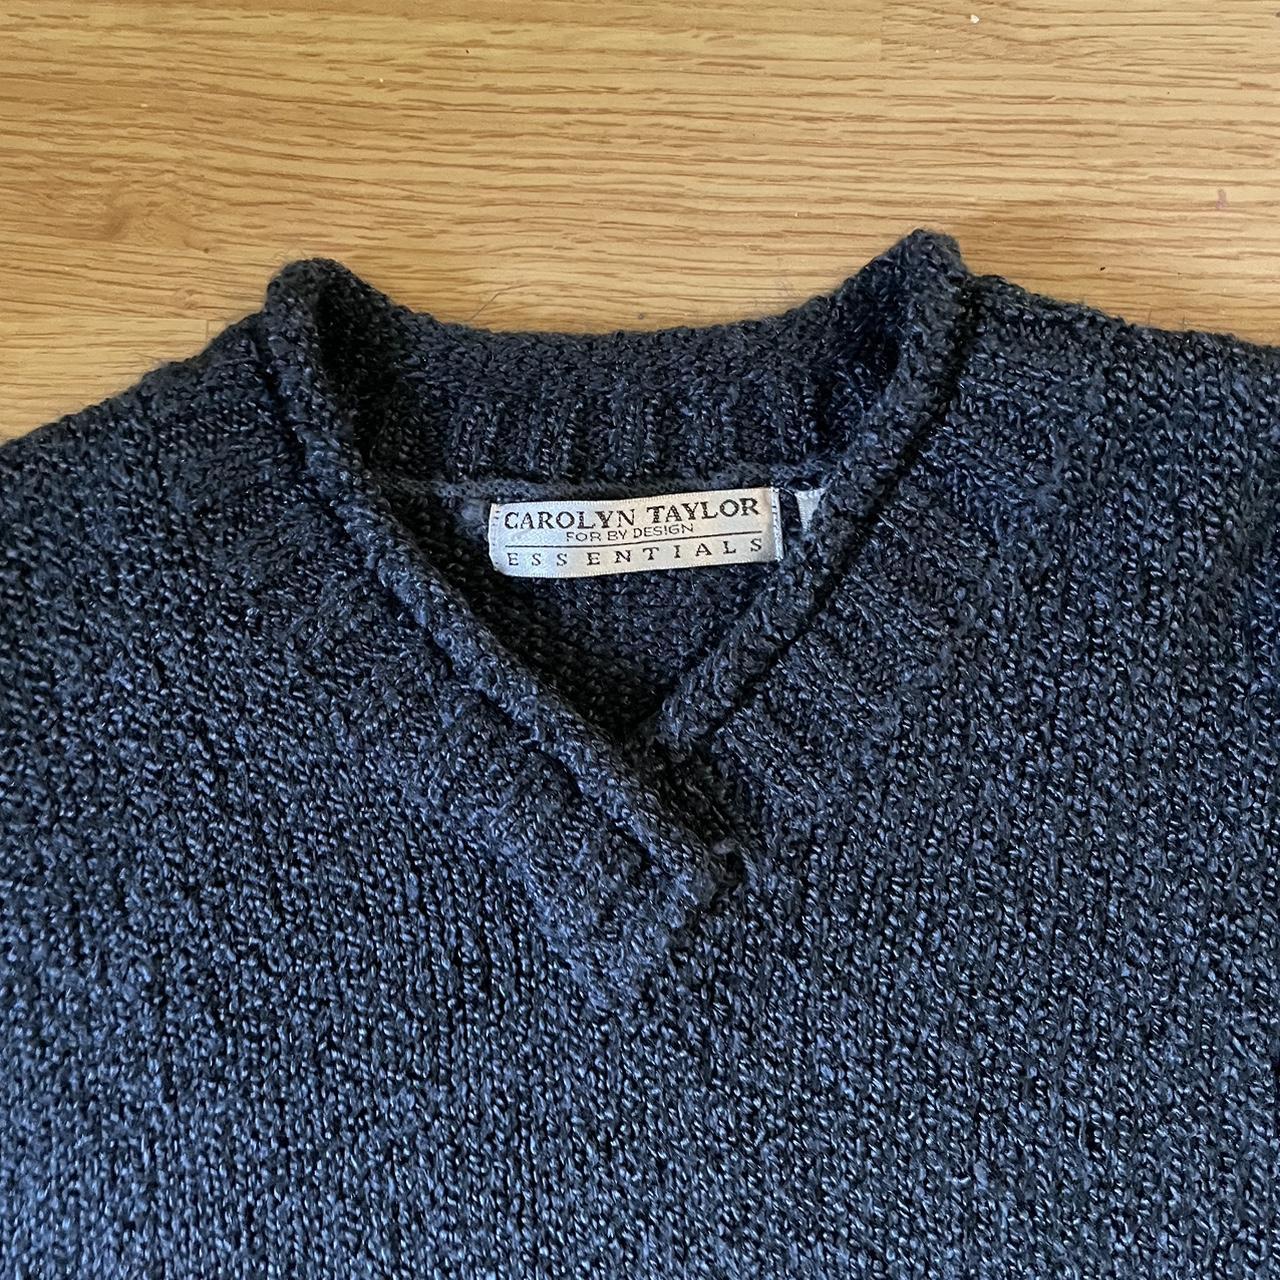 Vintage Carolyn Taylor V- Neck Sweater Comfy... - Depop